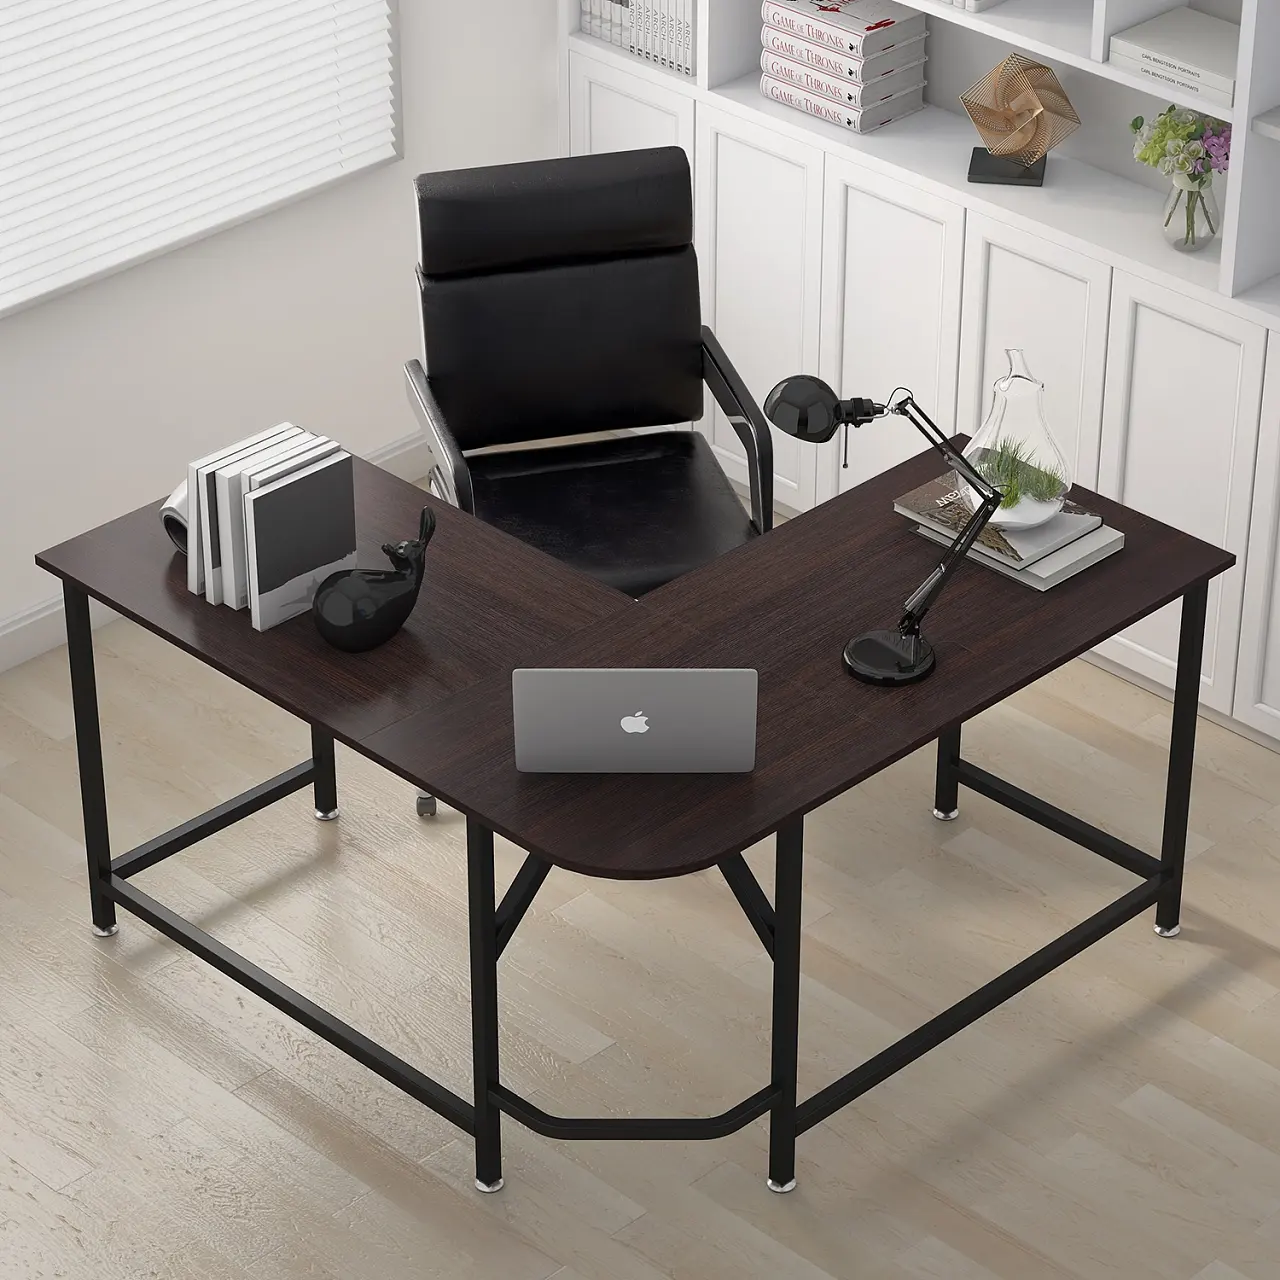 Holz l-förmigen Schreibtisch moderne Home-Office-Möbel setzt Schreibtisch benutzer definierte Executive Computer Schreibtisch